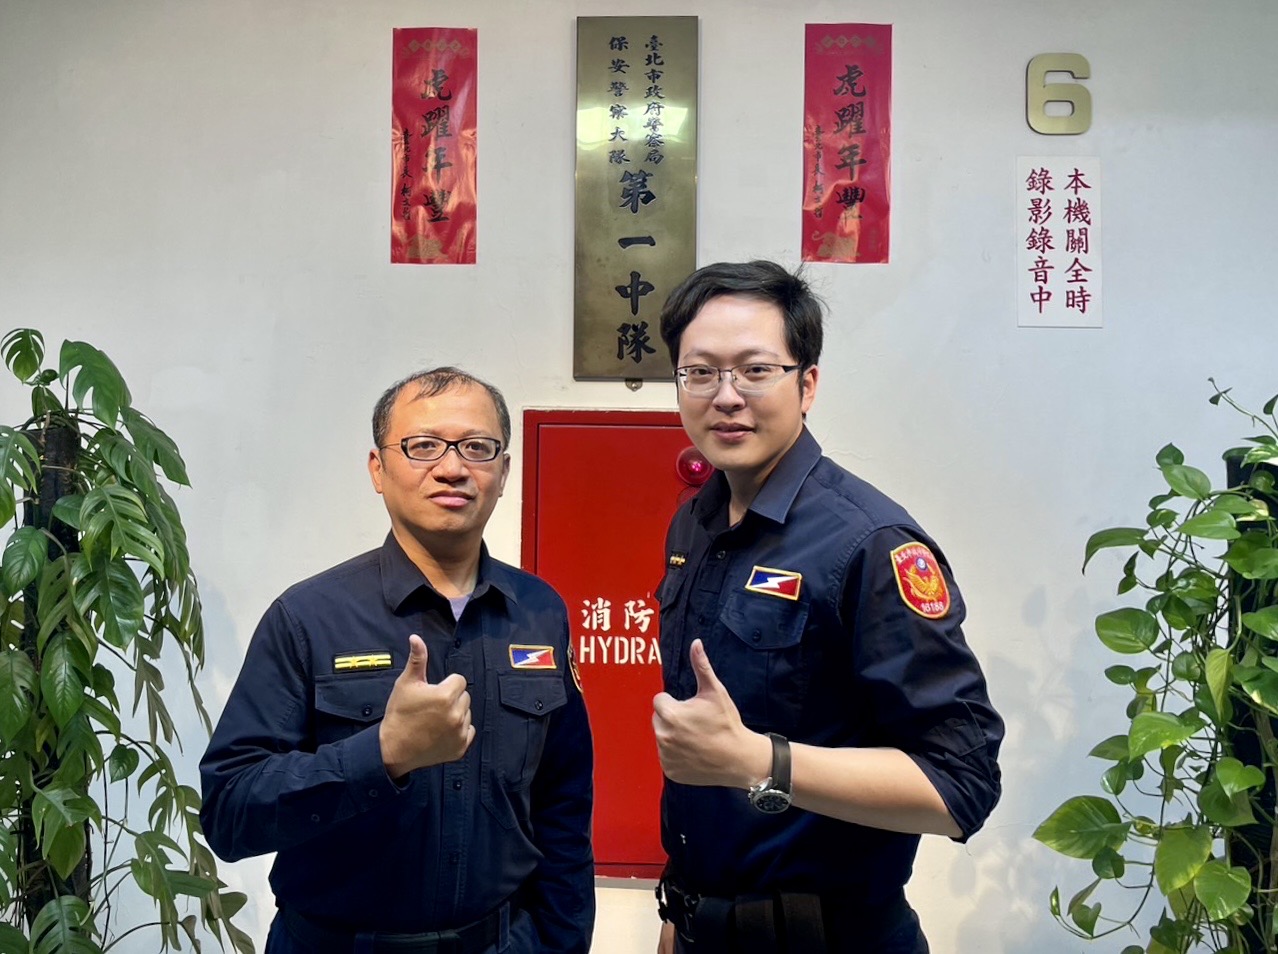 臺北市保安警察大隊第一中隊副中隊長李忠隆、警員呂冠伯等2員。